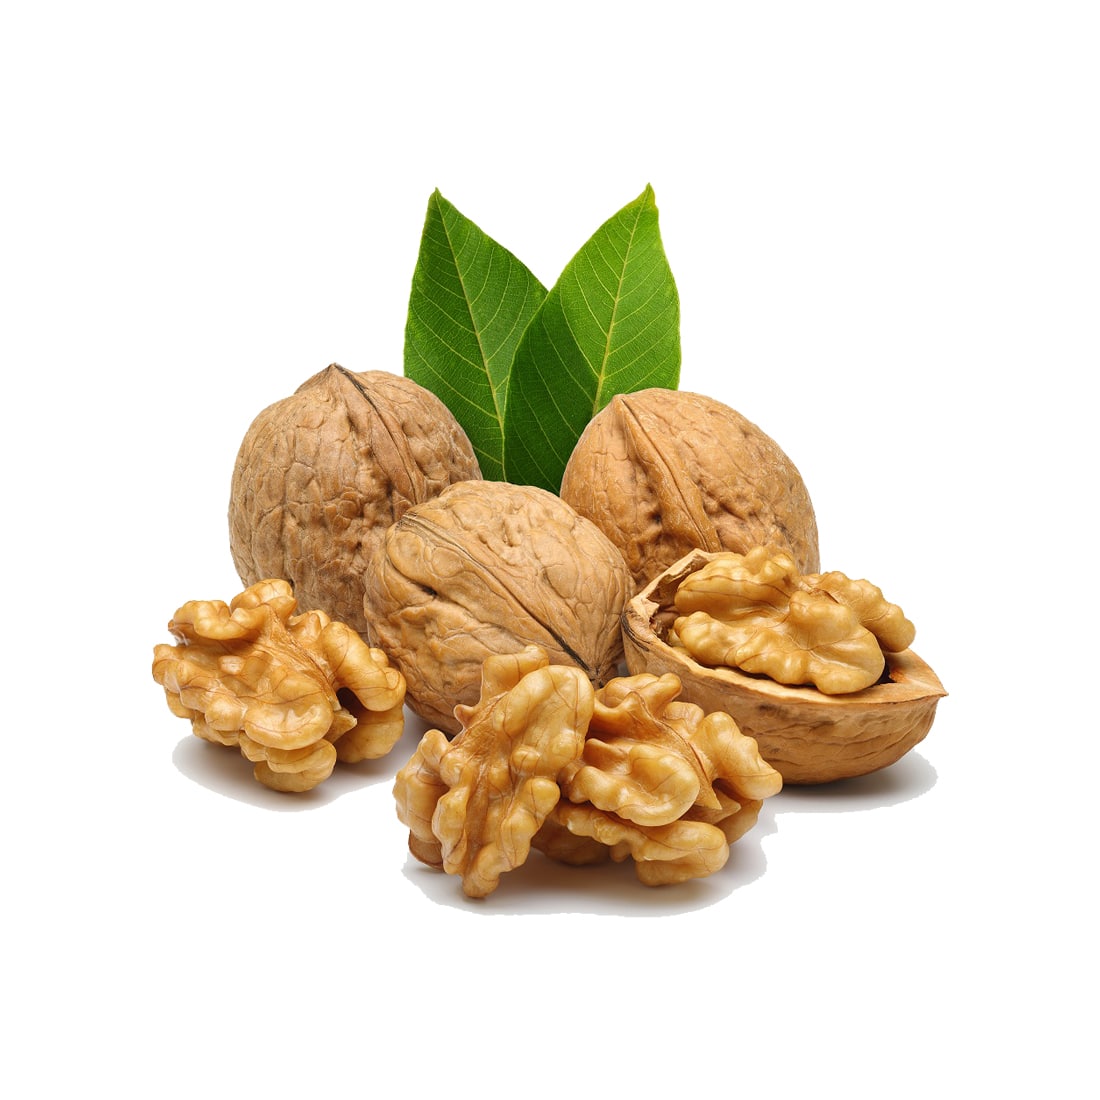 Nuts: almonds, cashews, walnuts, peanuts, pecans